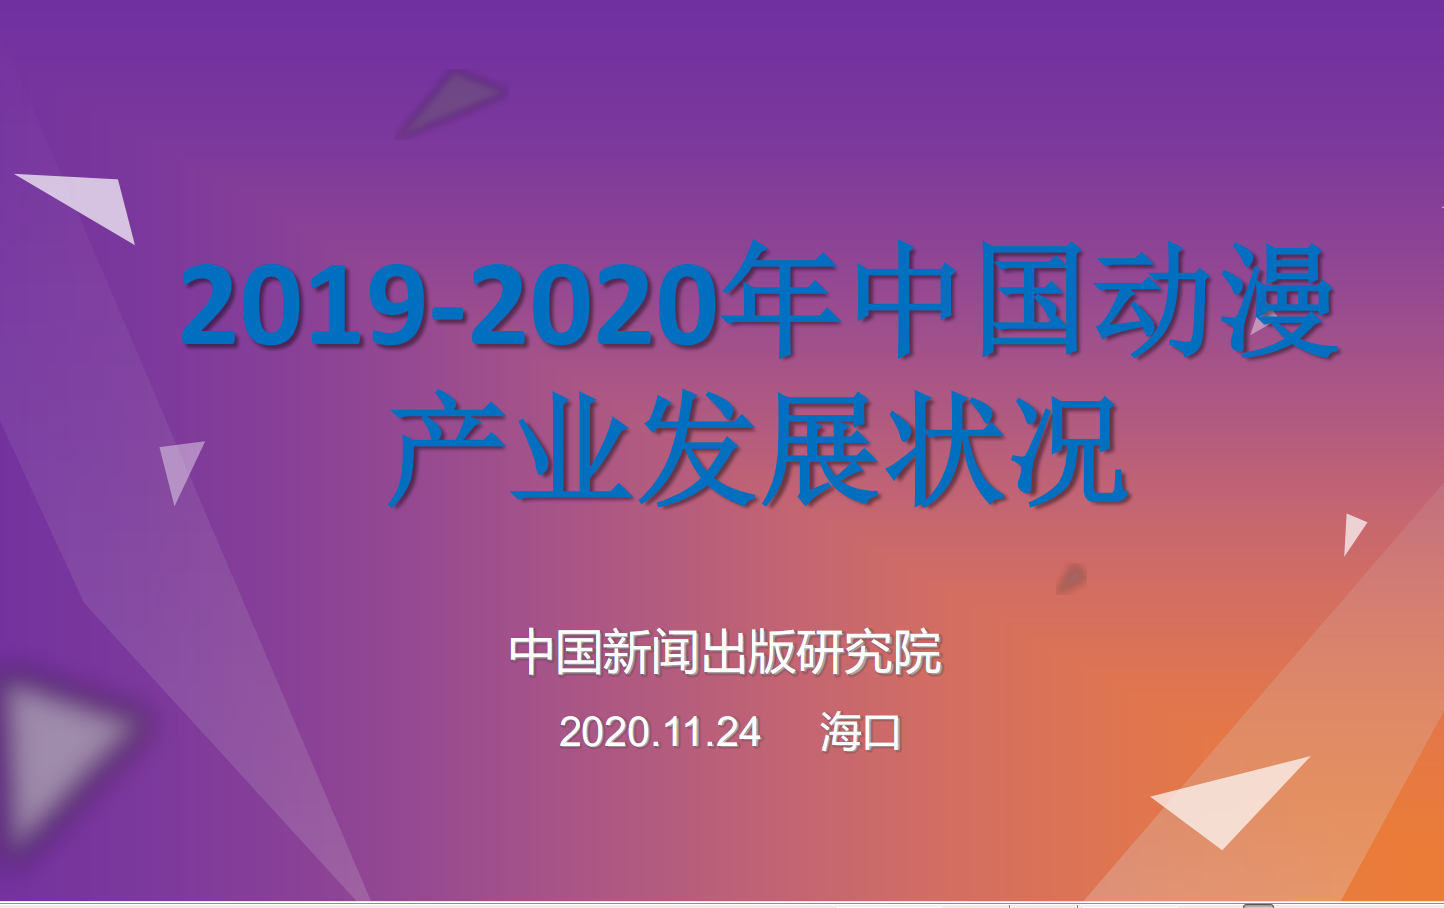 2019-2020中國動漫產業發展狀況